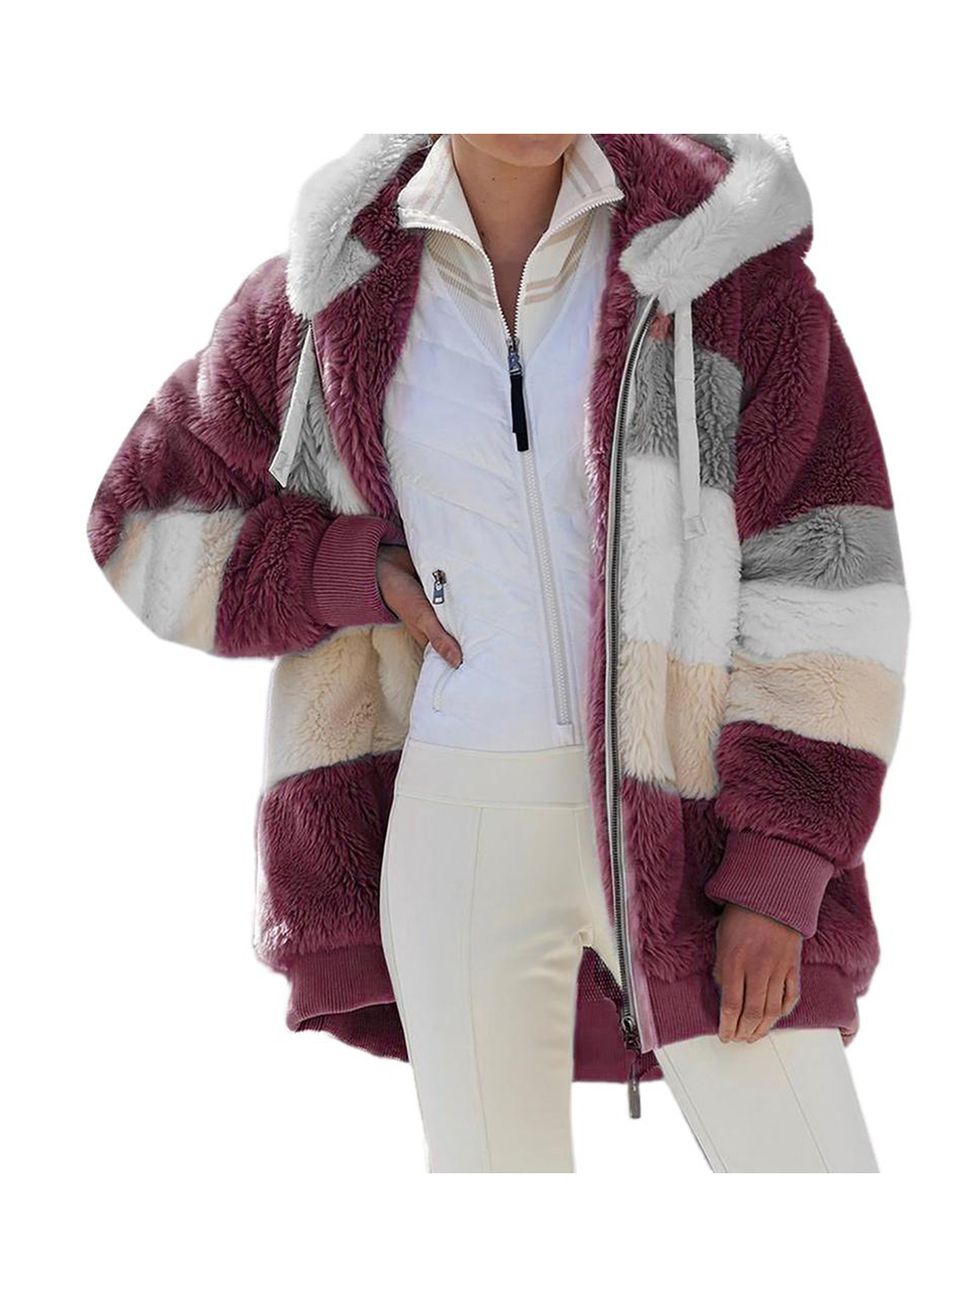 38 Best Women's Winter Coats - Warmest Winter Coats 2021